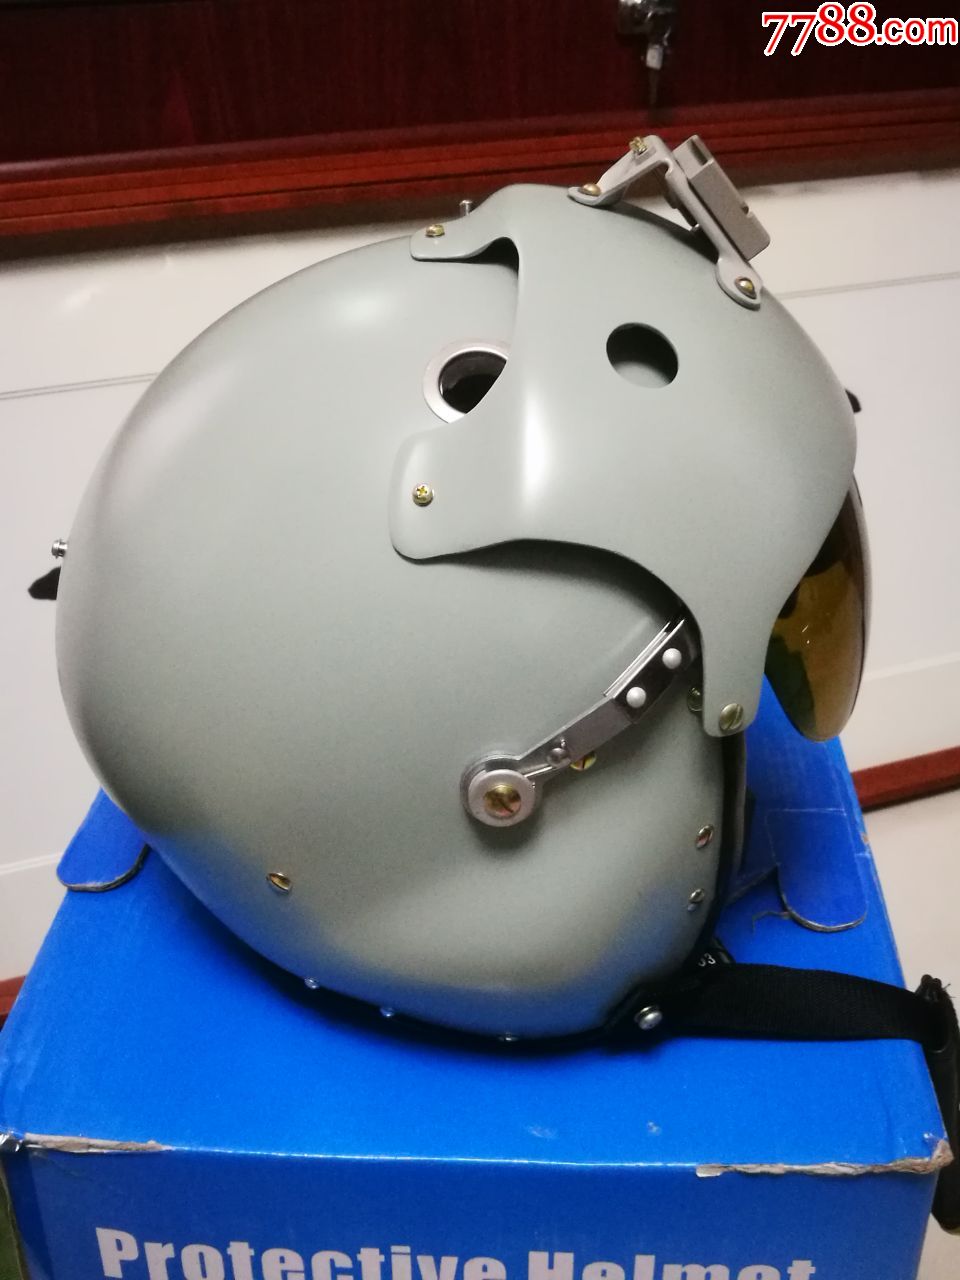 个人收藏空军tk-14型飞行员头盔,最新飞行员头盔,空军头盔转让